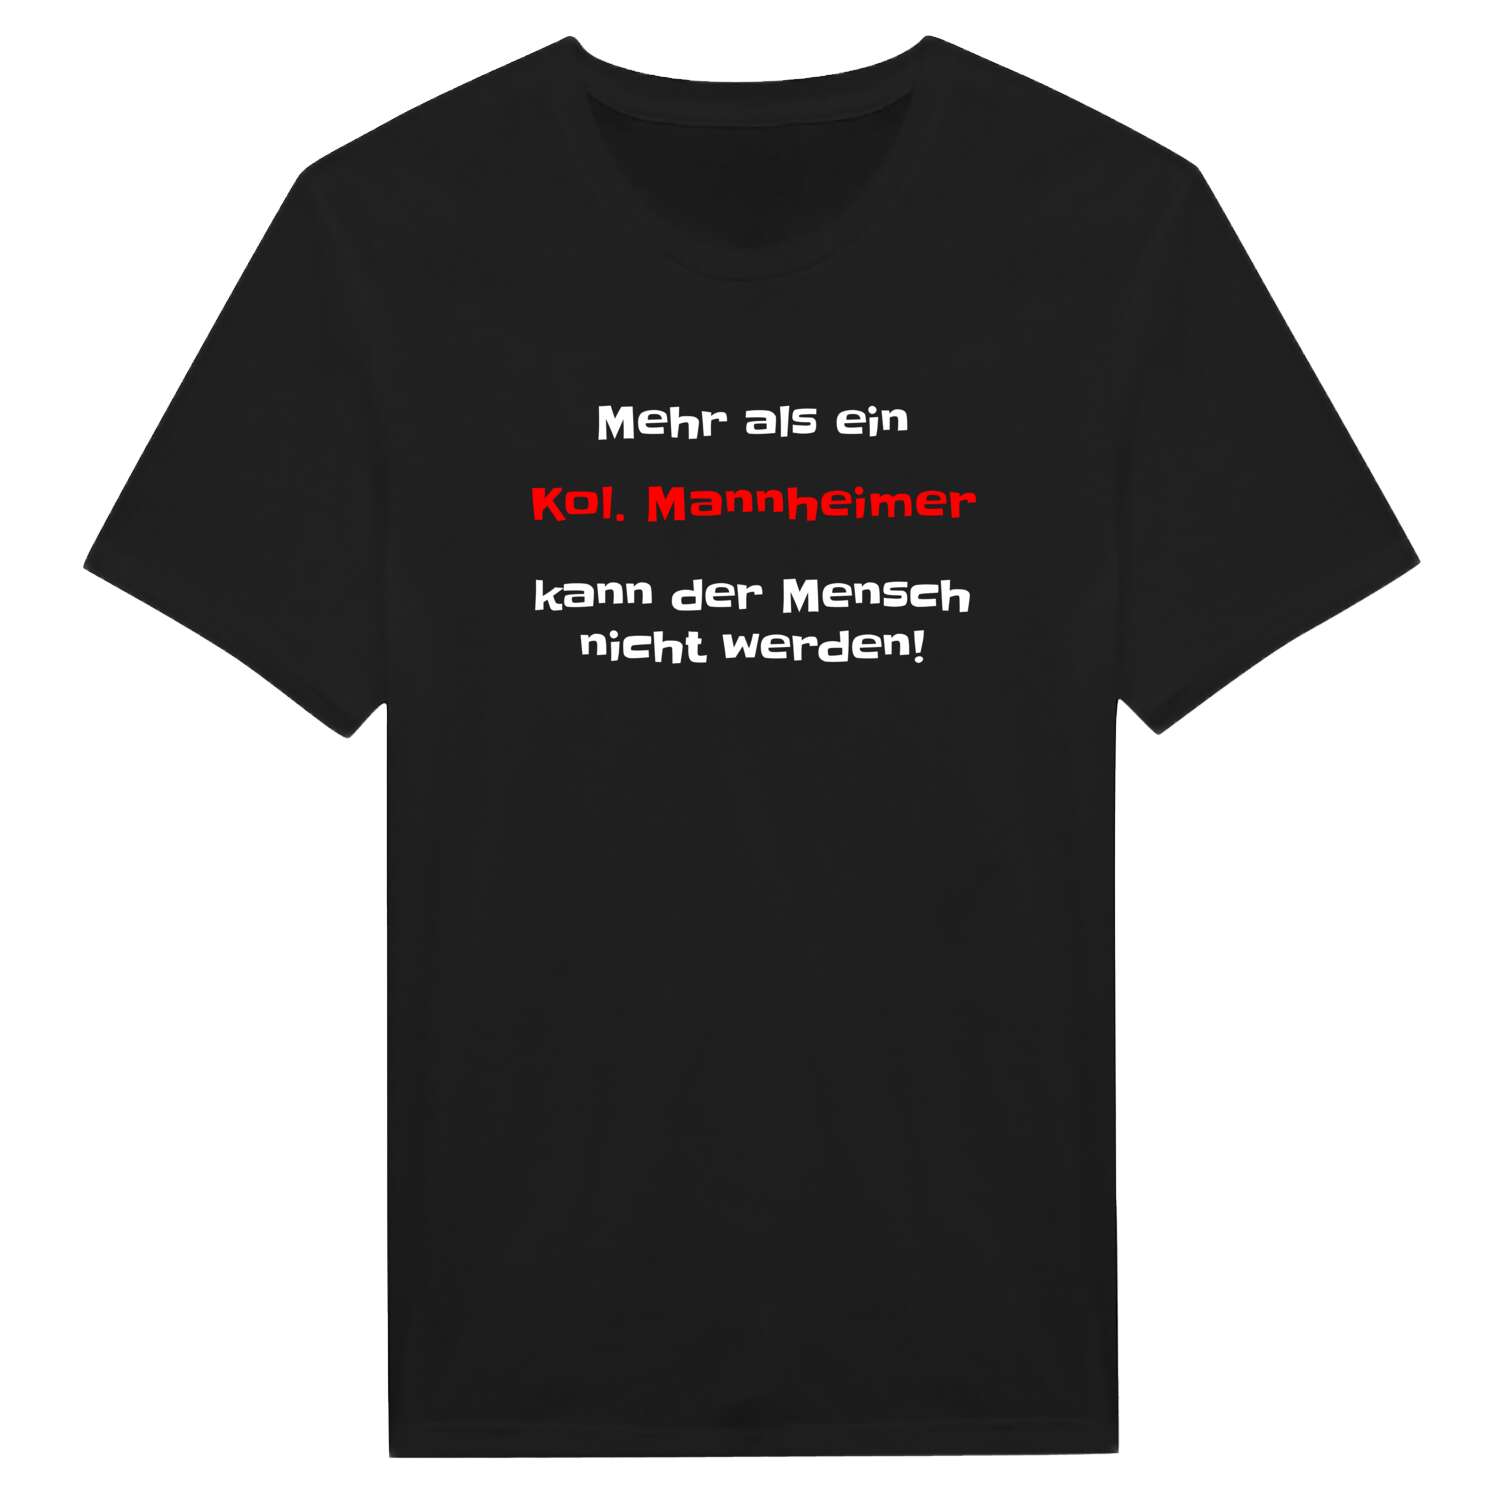 Kol. Mannheim T-Shirt »Mehr als ein«